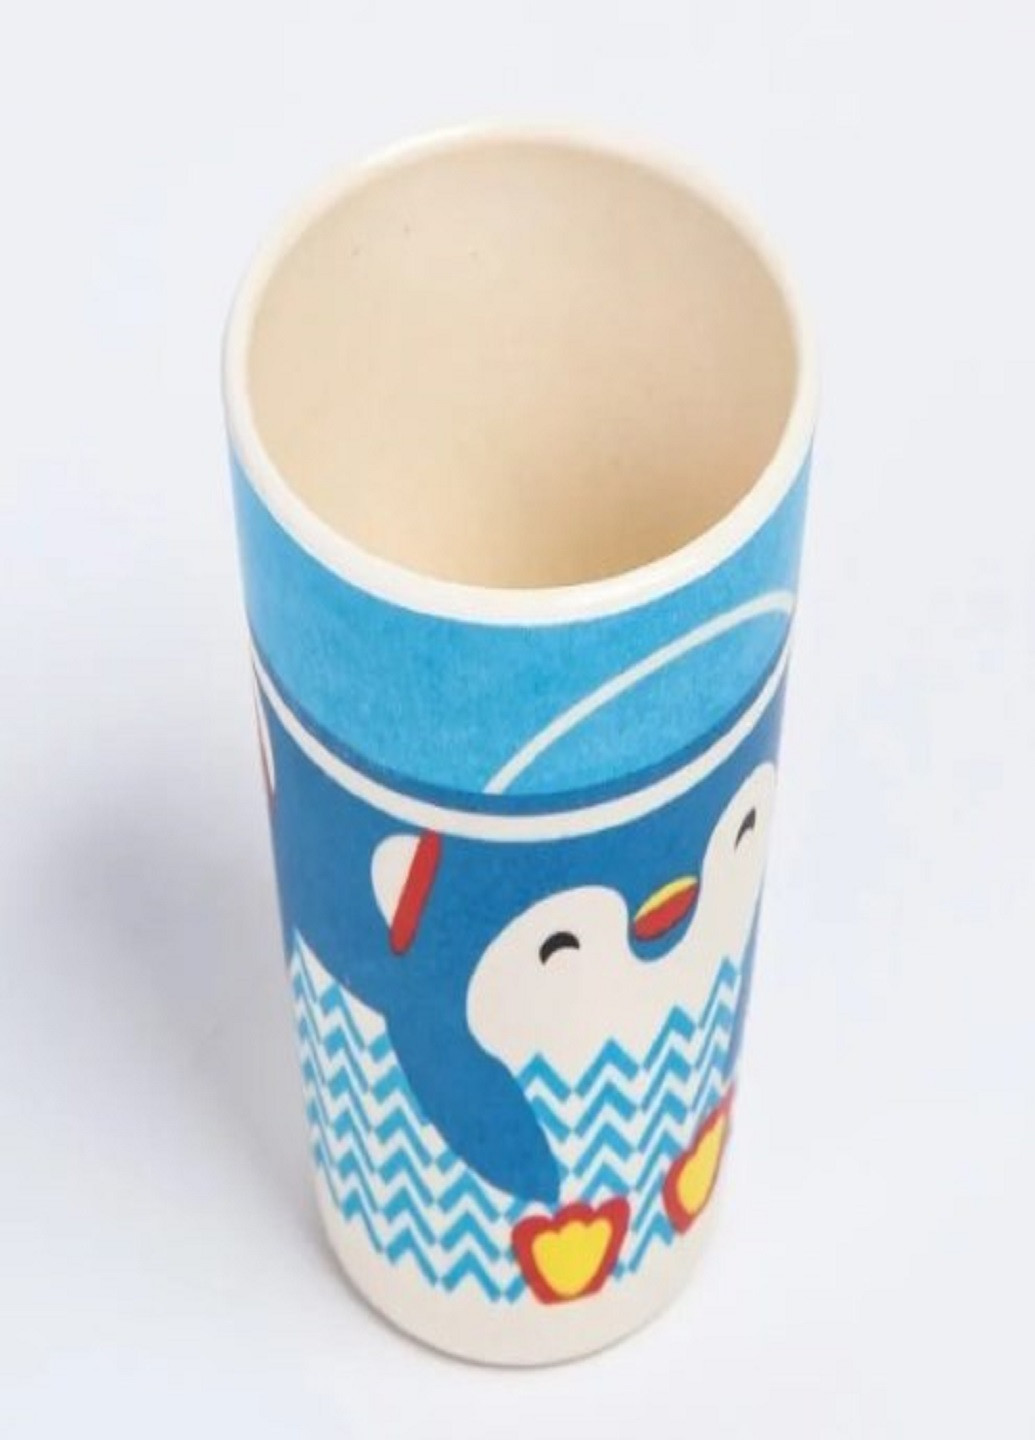 Бамбуковый набор детской посуды ECO friendly product 5 предметов пингвин синий VTech (263346954)